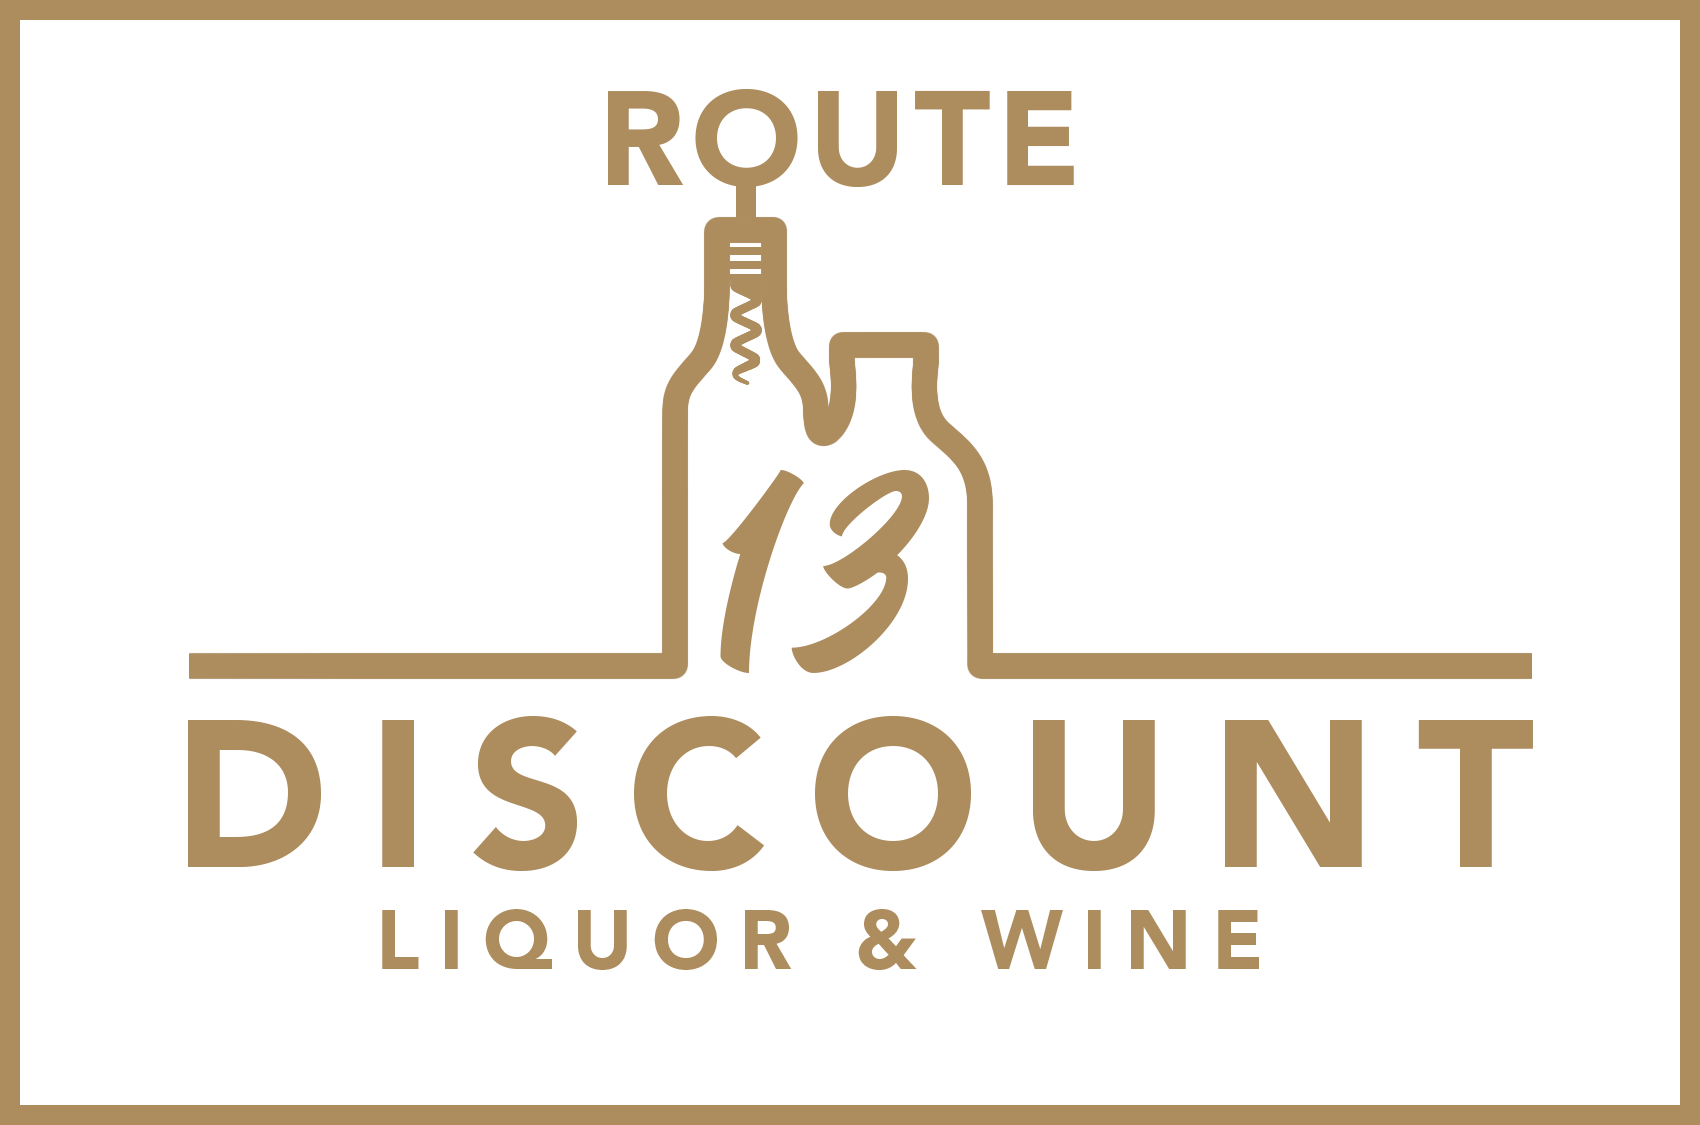 Route 13 Discount Liquor & Wine